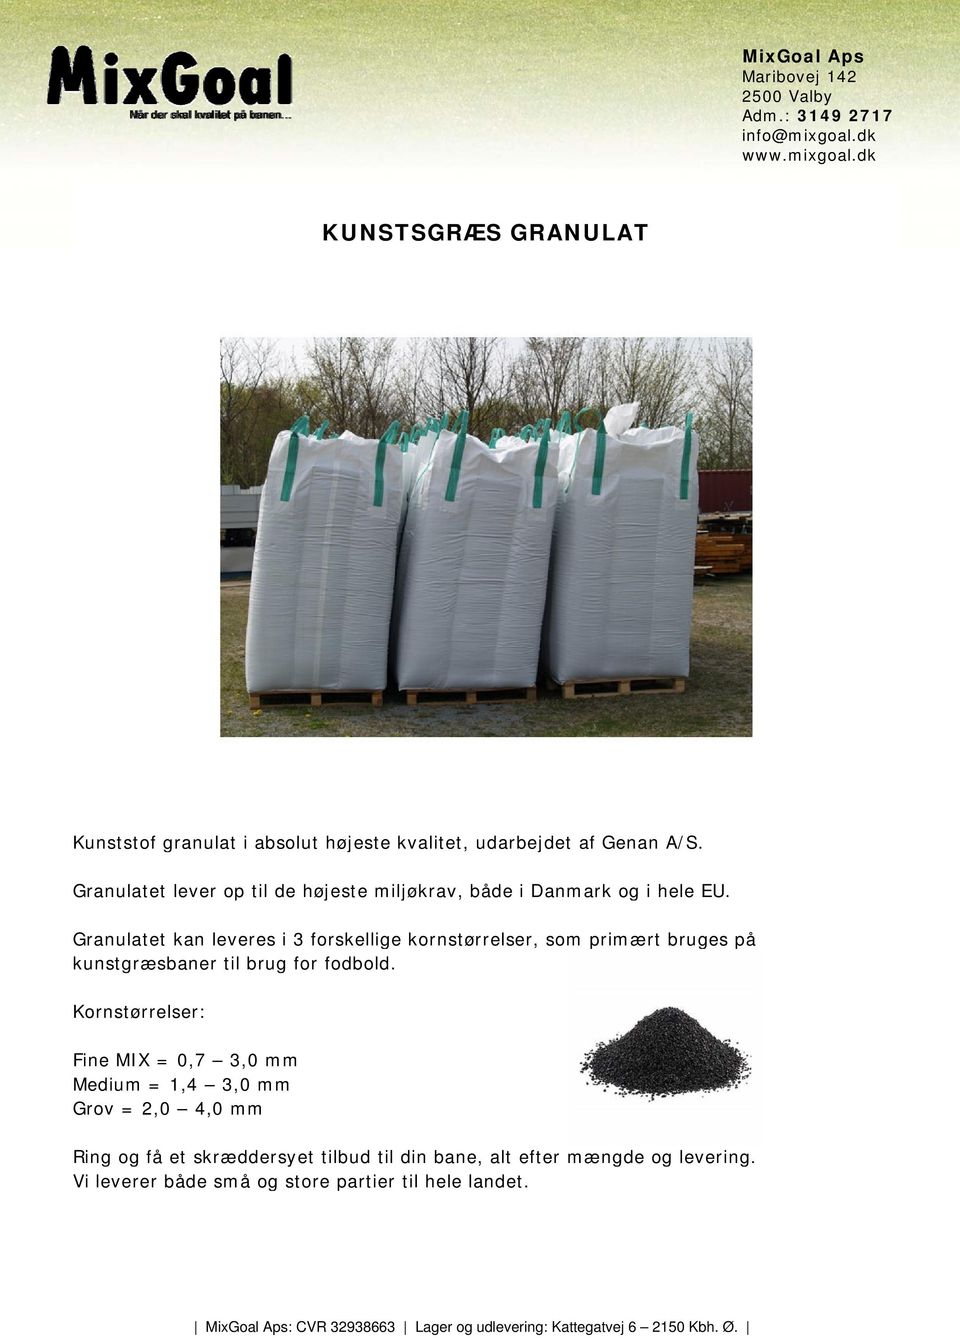 Granulatet kan leveres i 3 forskellige kornstørrelser, som primært bruges på kunstgræsbaner til brug for fodbold.